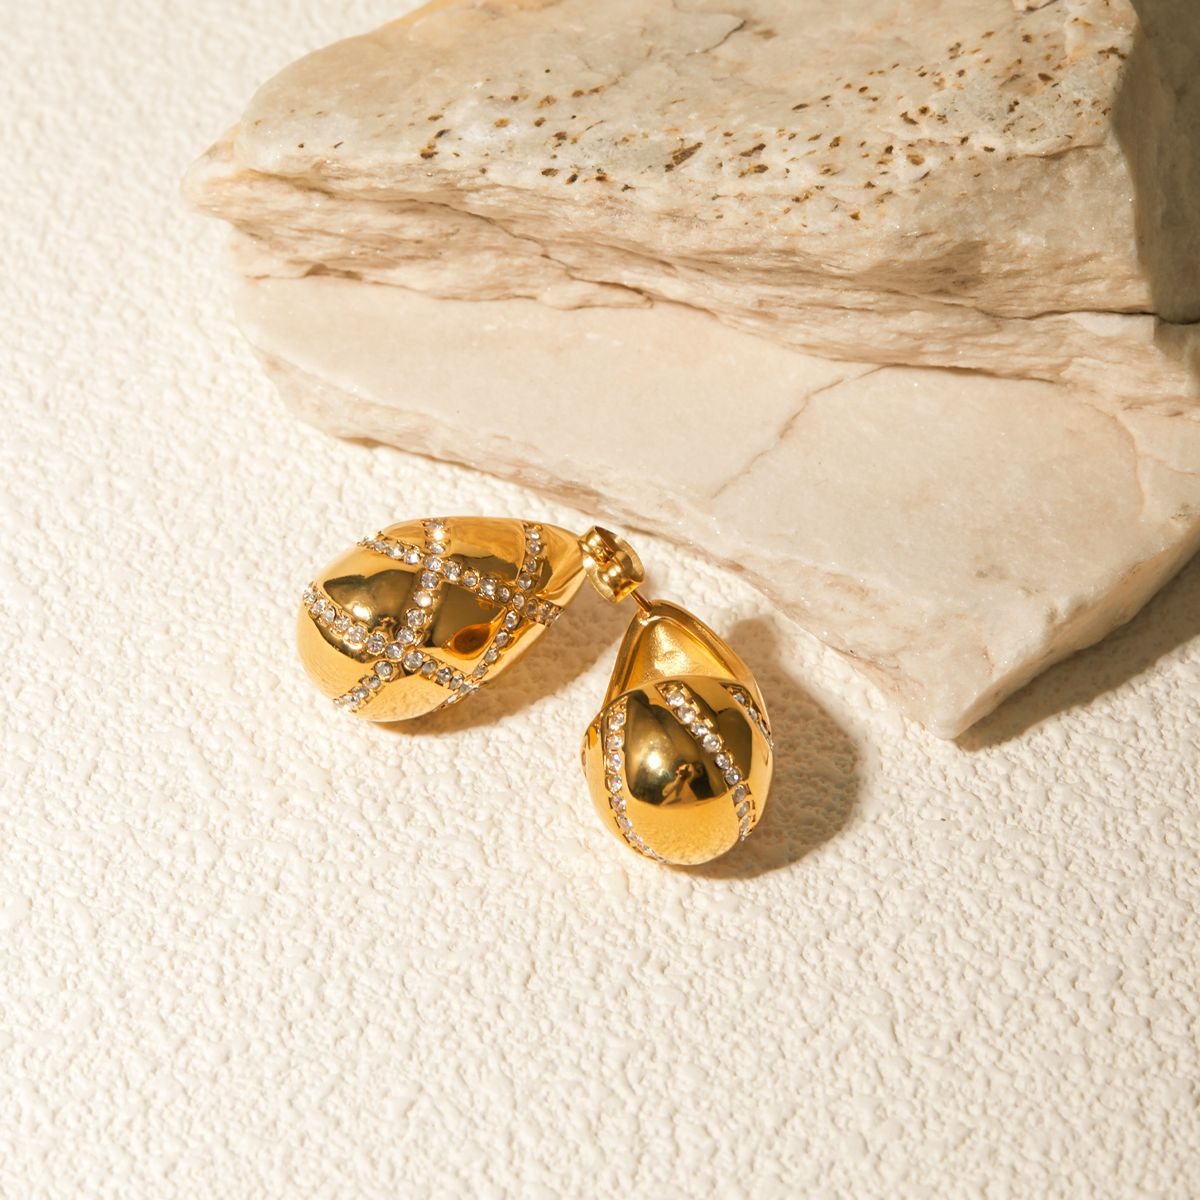 Modische 18-Karat-Ohrringe in Tropfenform mit diamantbesetztem Rautendesign